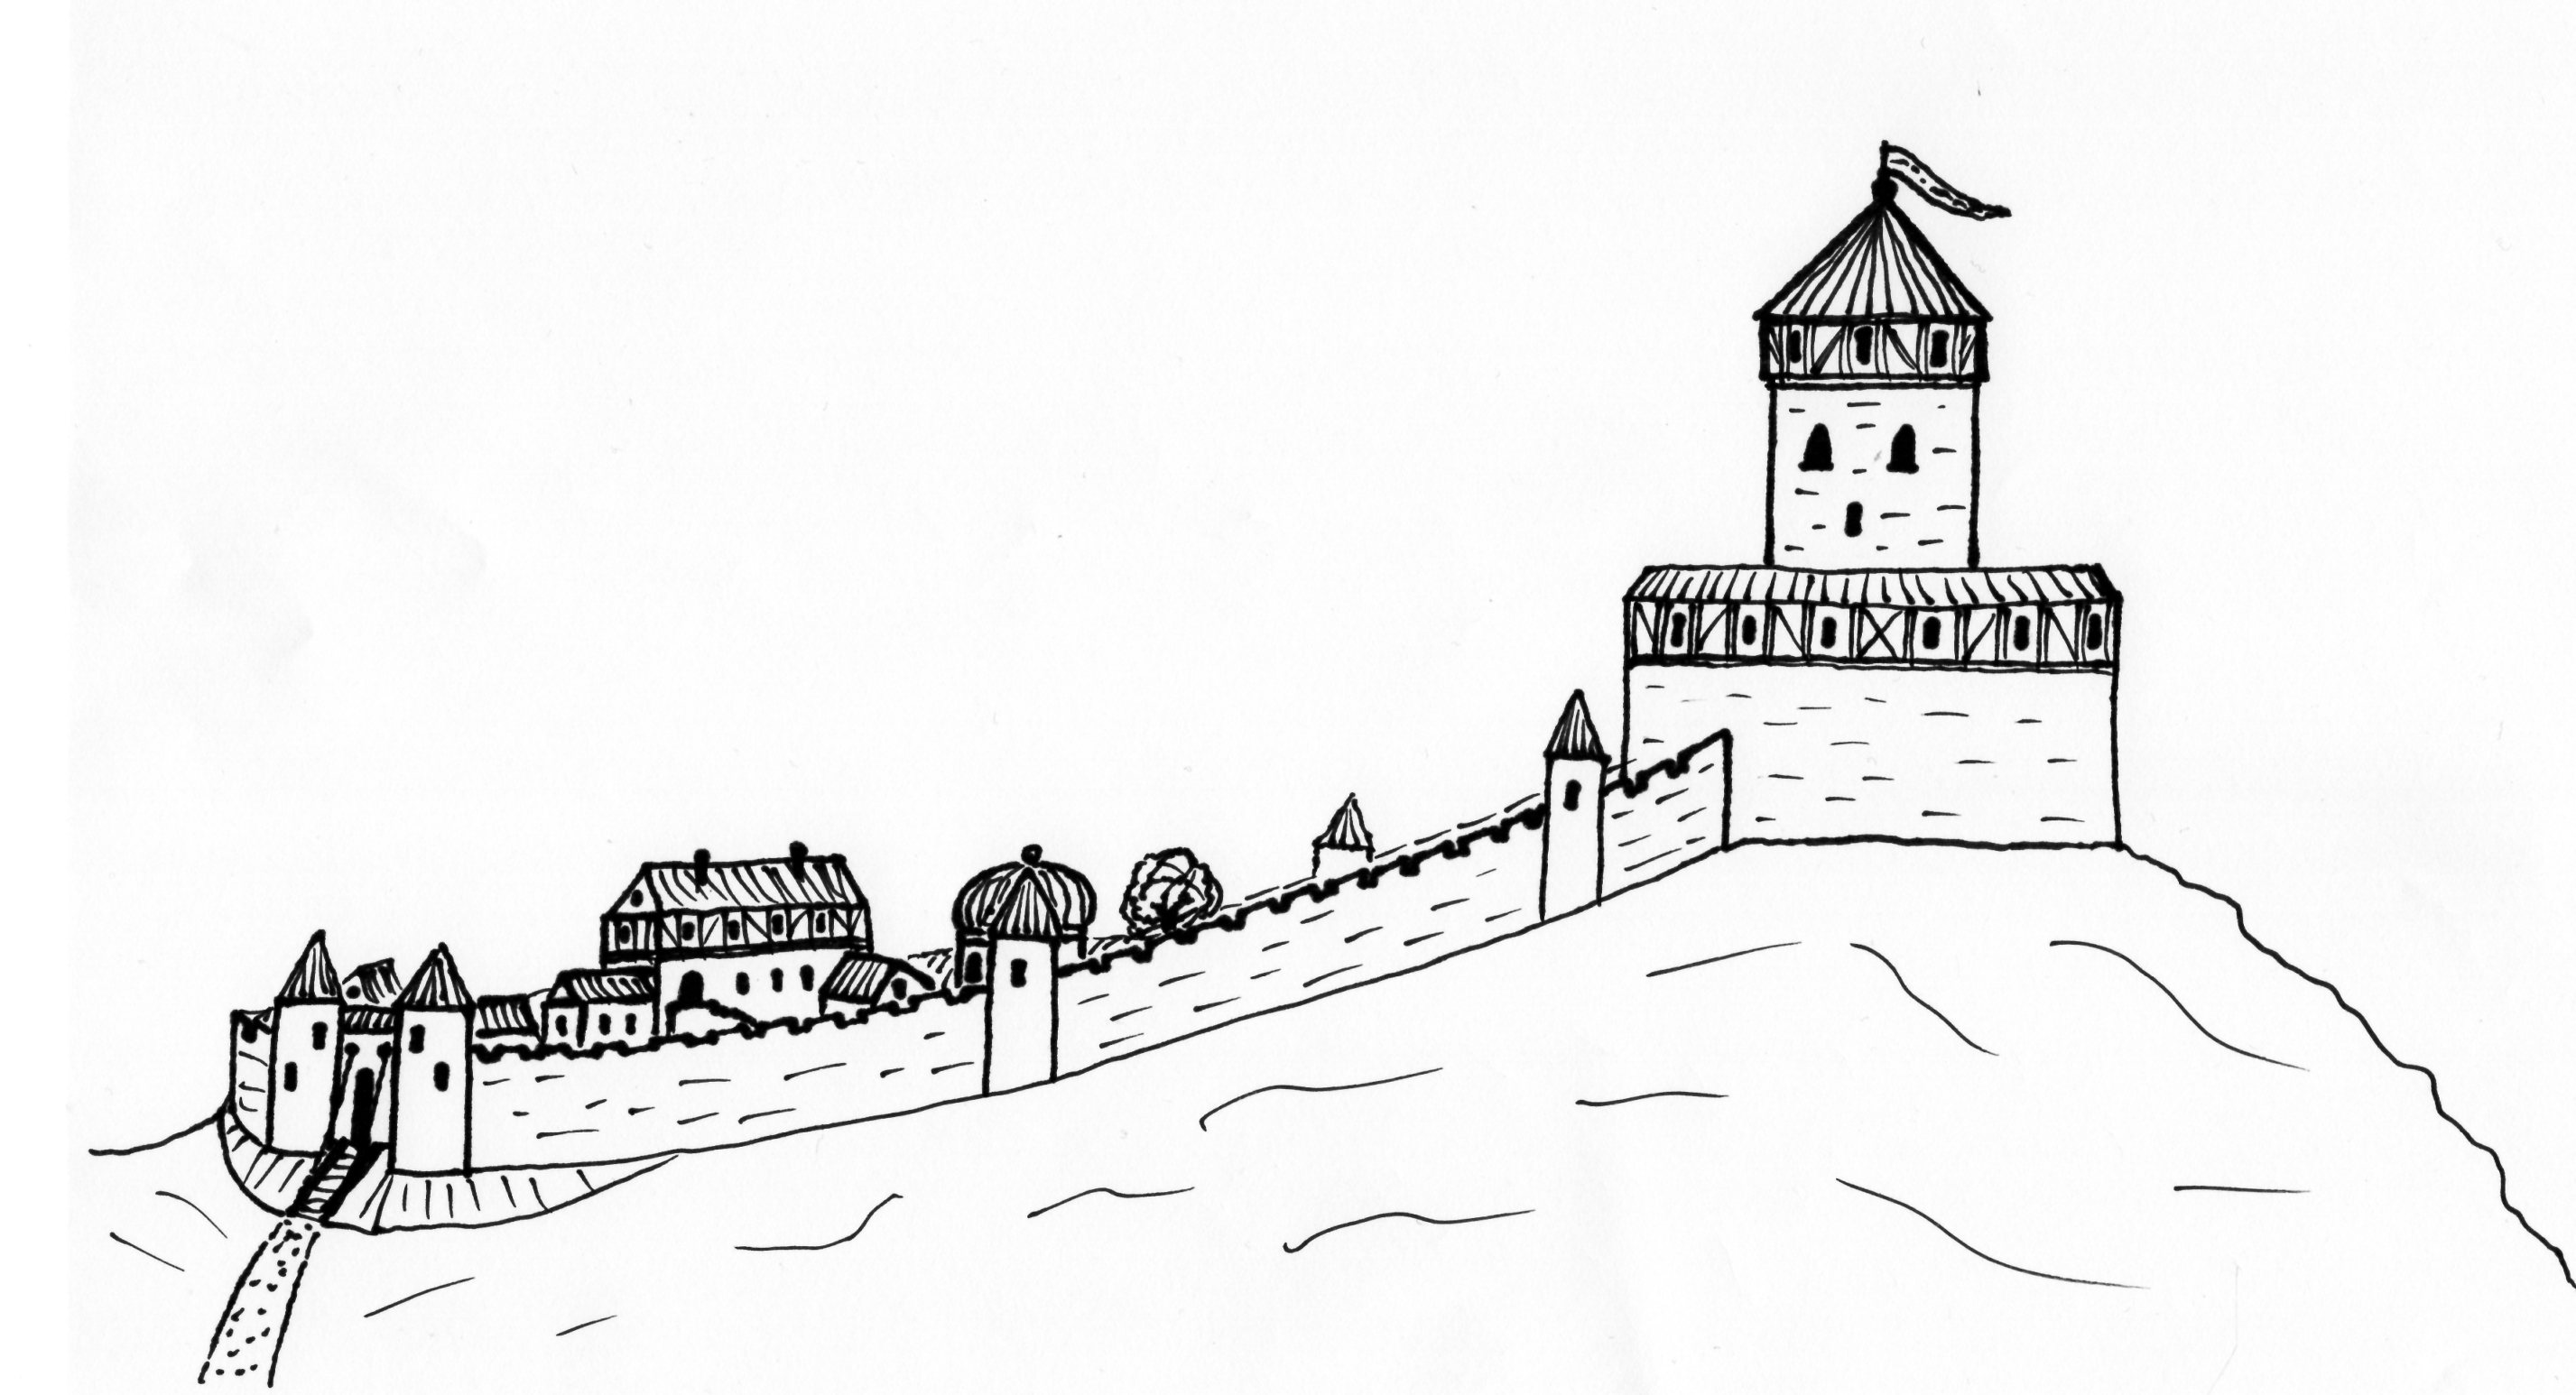 Bild der Burg